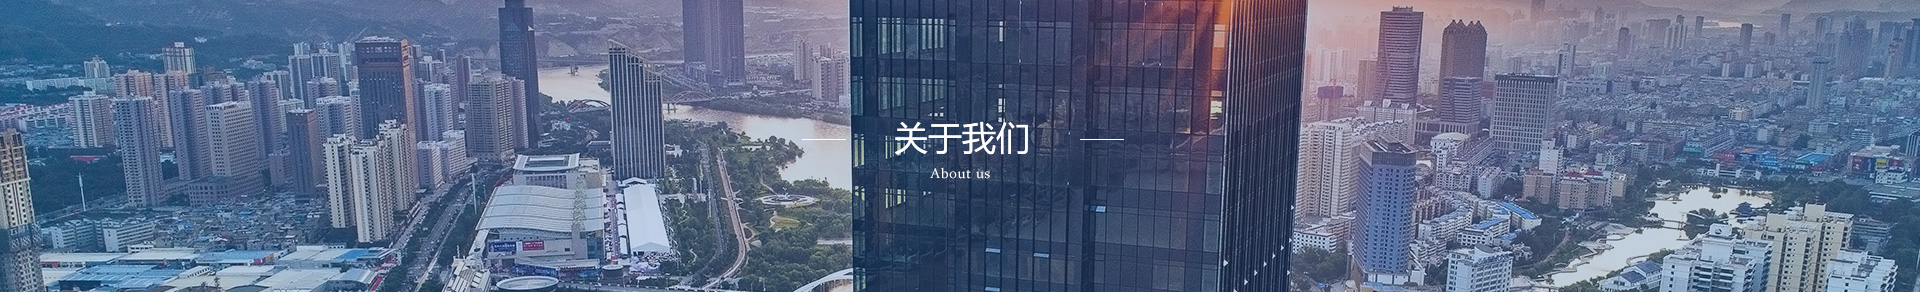 天博官方网站(中国)有限公司我们